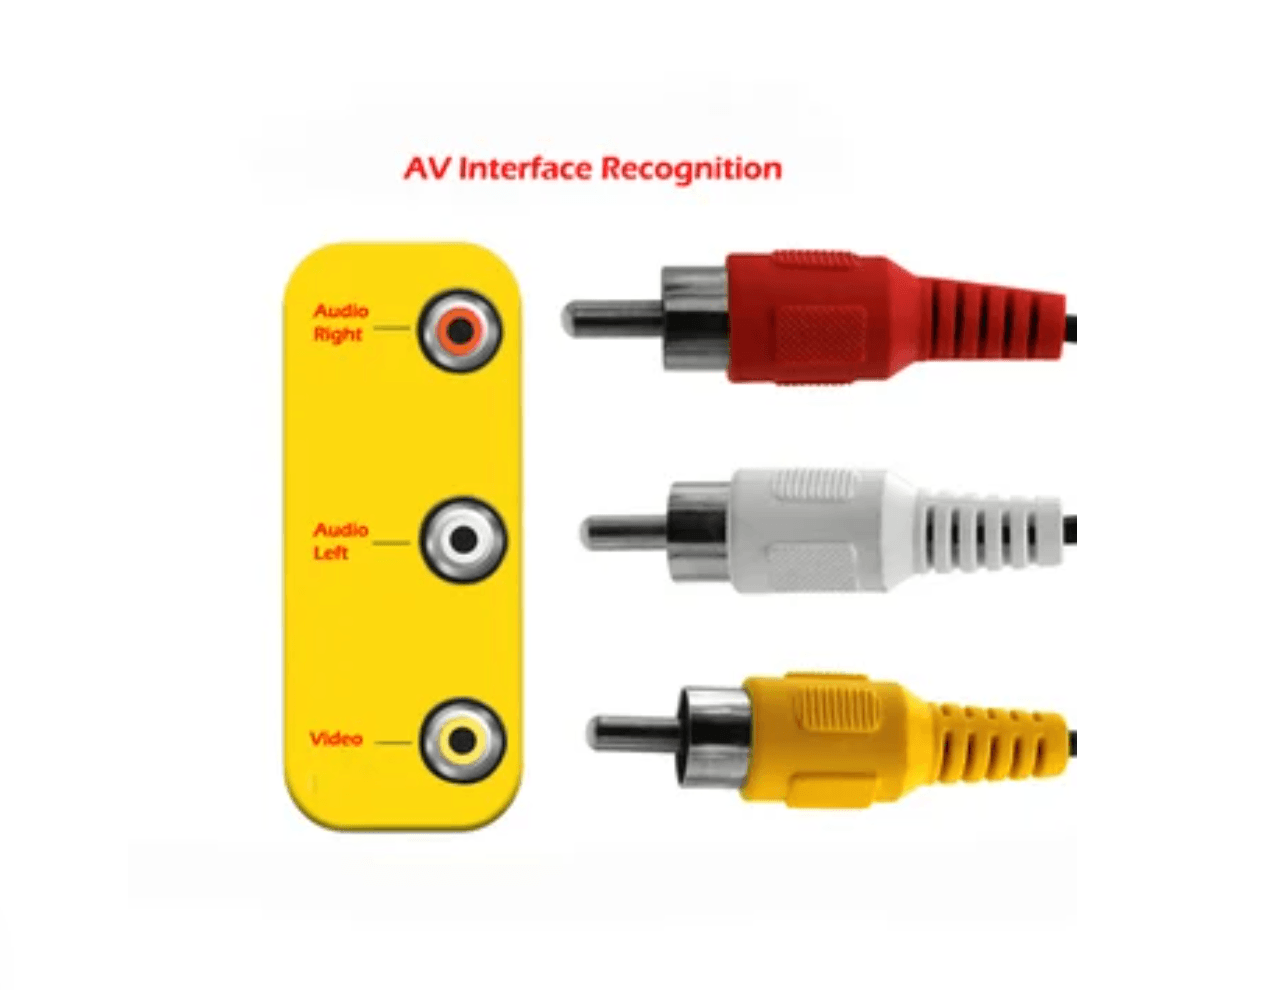 Cable de Audio Plug 3.5mm a 2 RCA Macho 1.8 Metros NETCOM